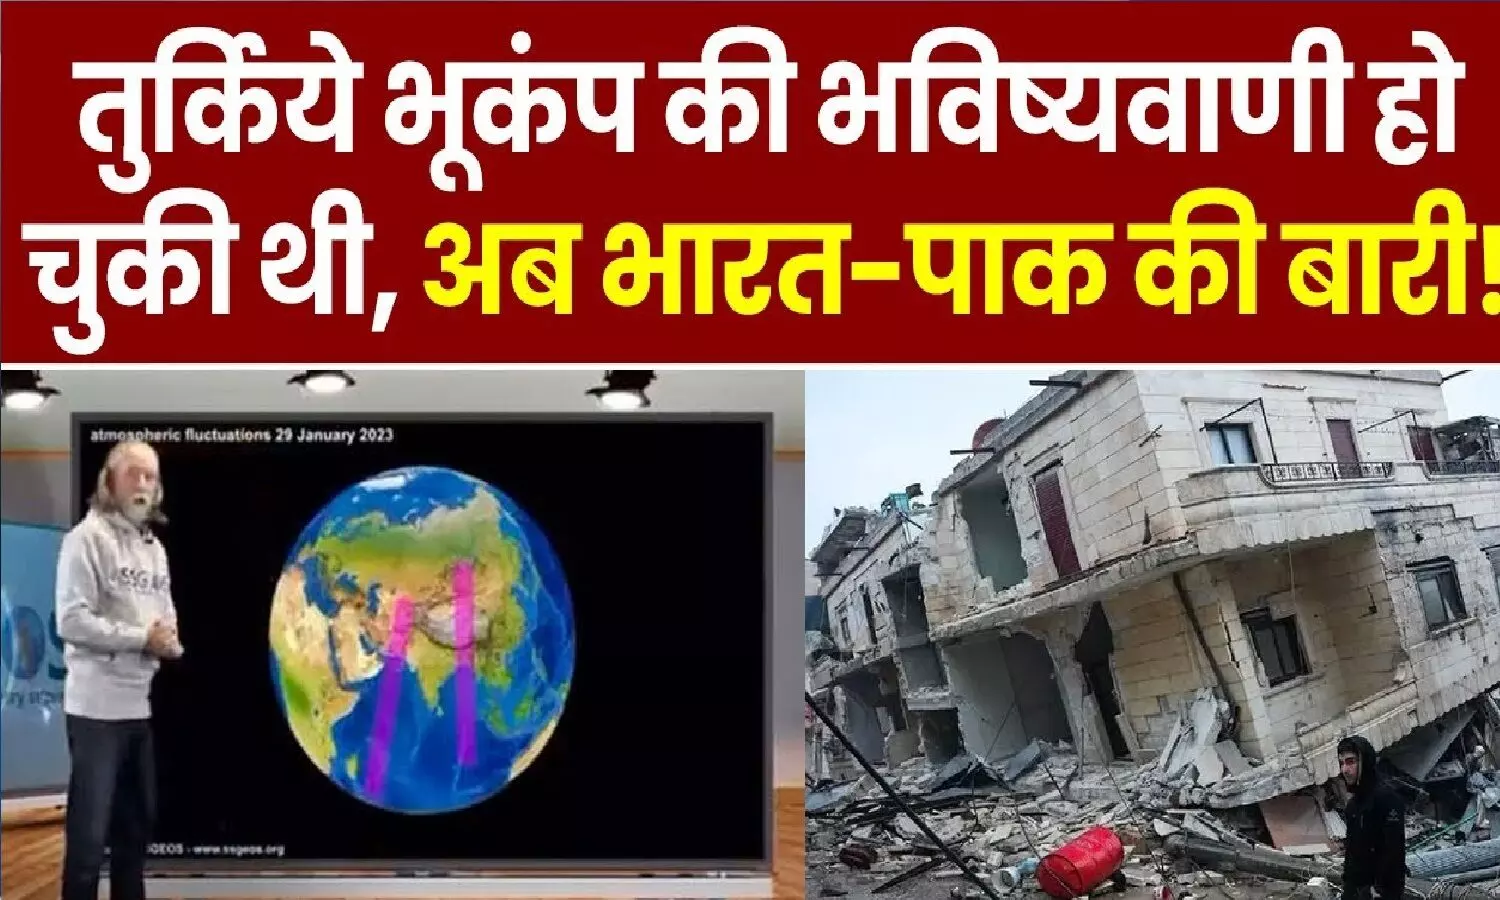 तुर्किये में भूकंप की सटीक भविष्यवाणी करने वाले वैज्ञानिक ने कहा- भारत में शक्तिशाली भूकंप आने वाला है